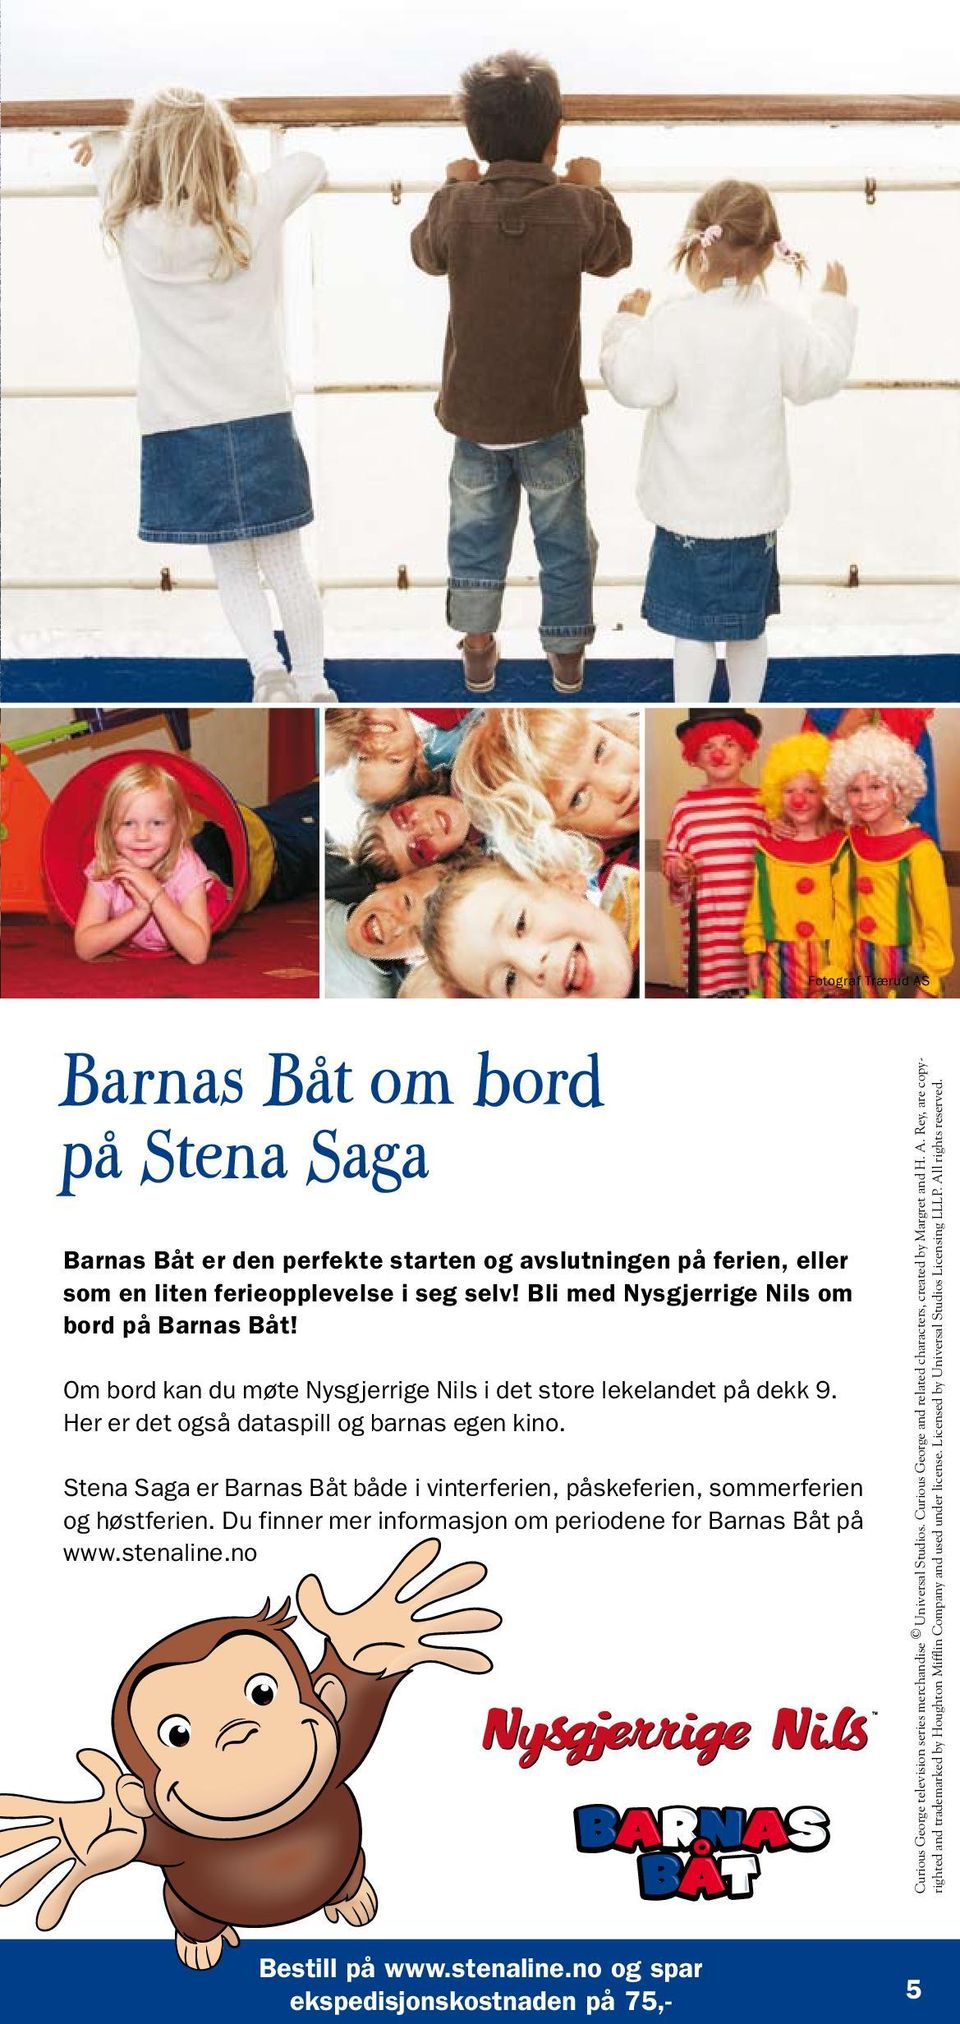 Stena Saga er Barnas Båt både i vinterferien, påskeferien, sommerferien og høstferien. Du finner mer informasjon om periodene for Barnas Båt på www.stenaline.